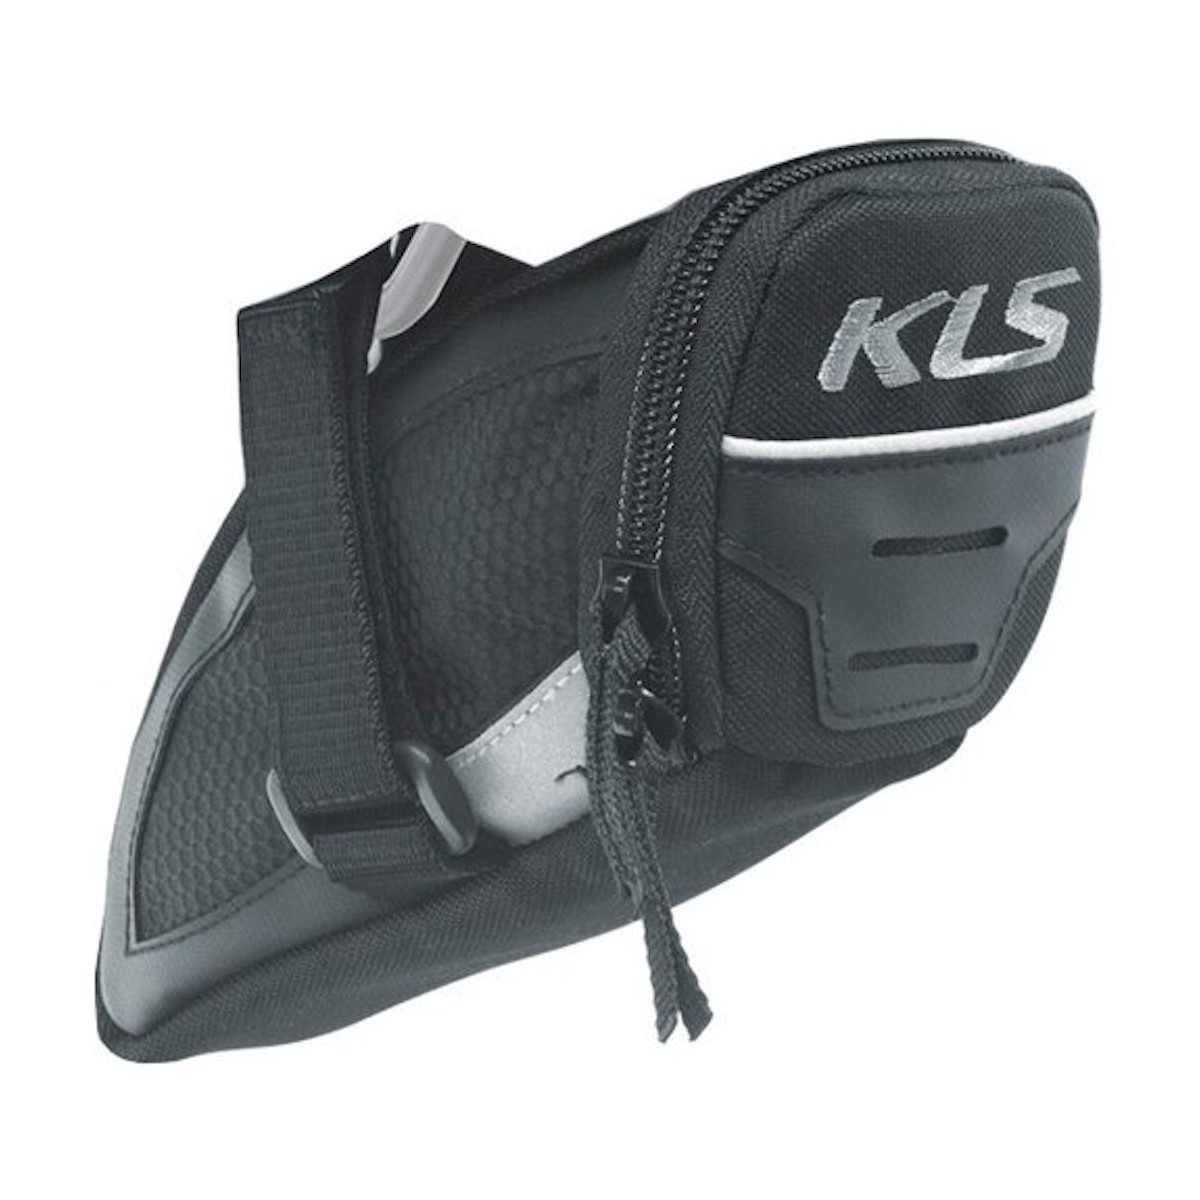 KLS CHALLENGER L 0.8L bag under saddle - black